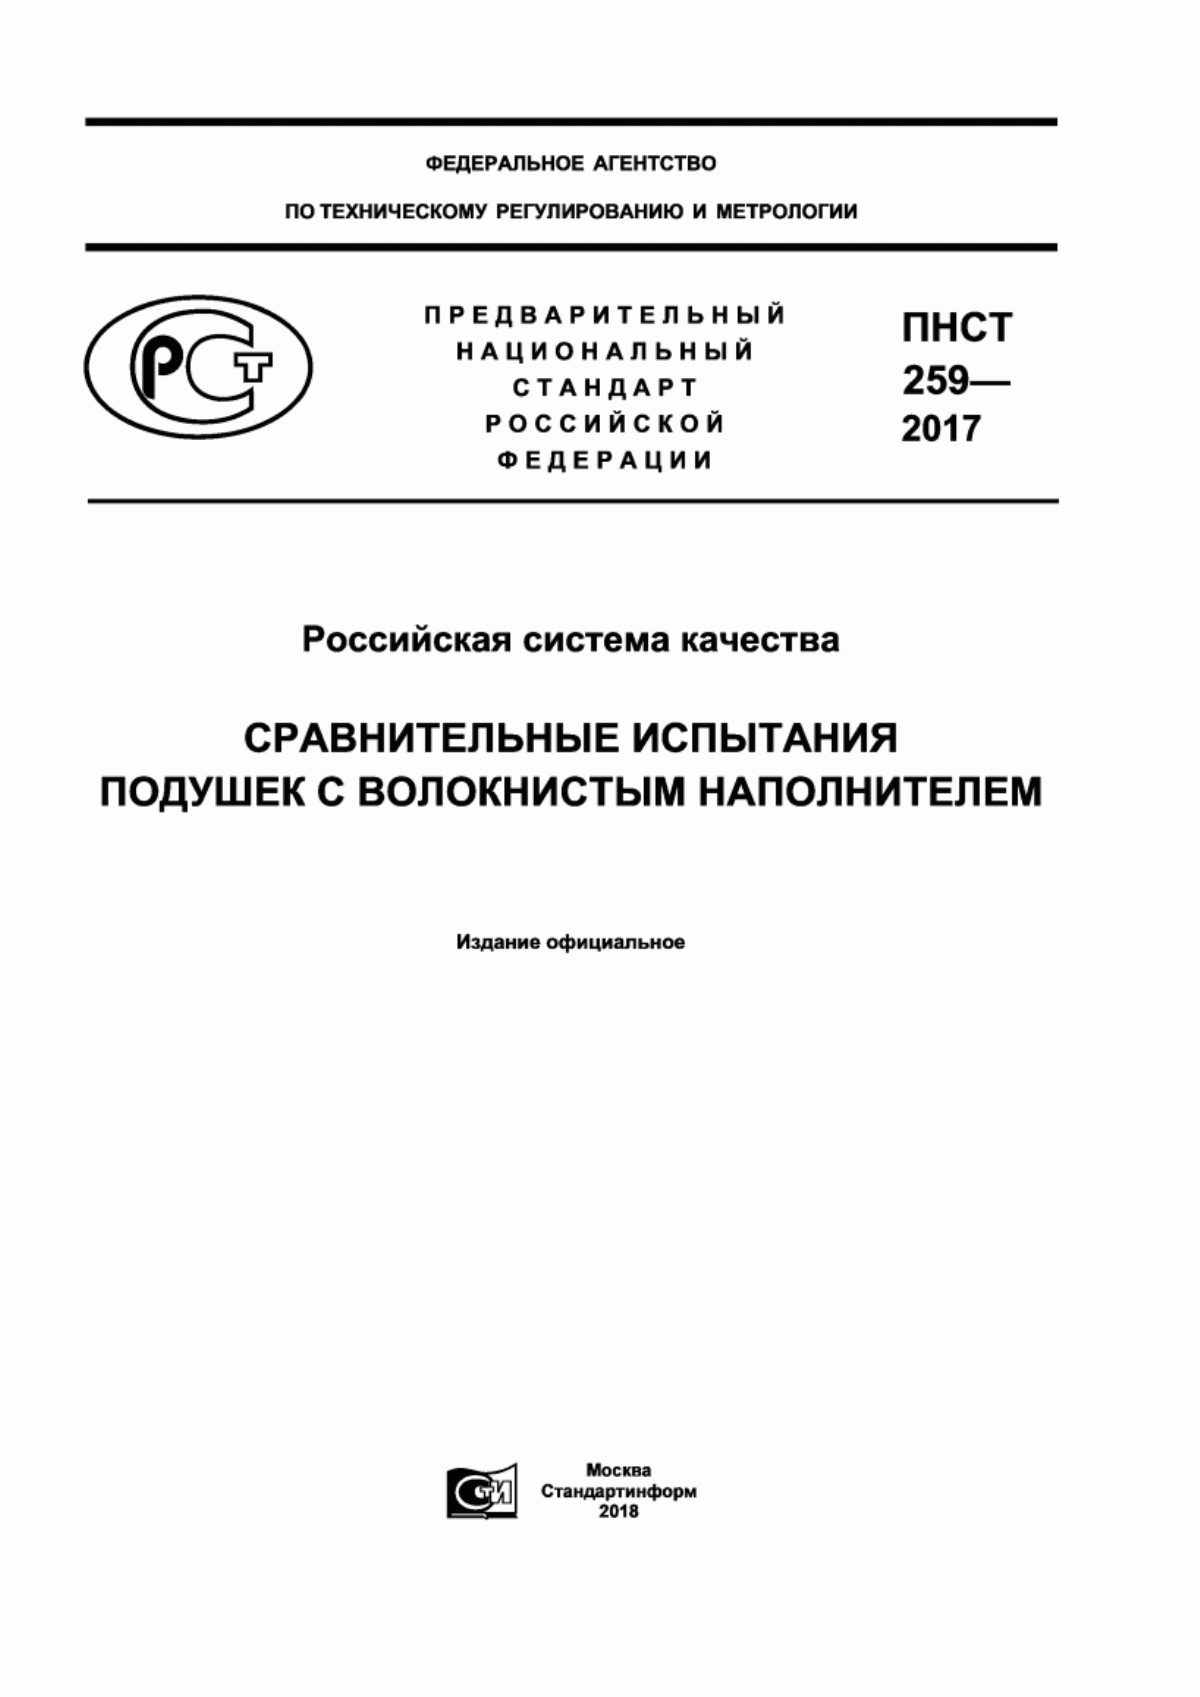 ПНСТ 259-2017 Российская система качества. Сравнительные испытания подушек с волокнистым наполнителем